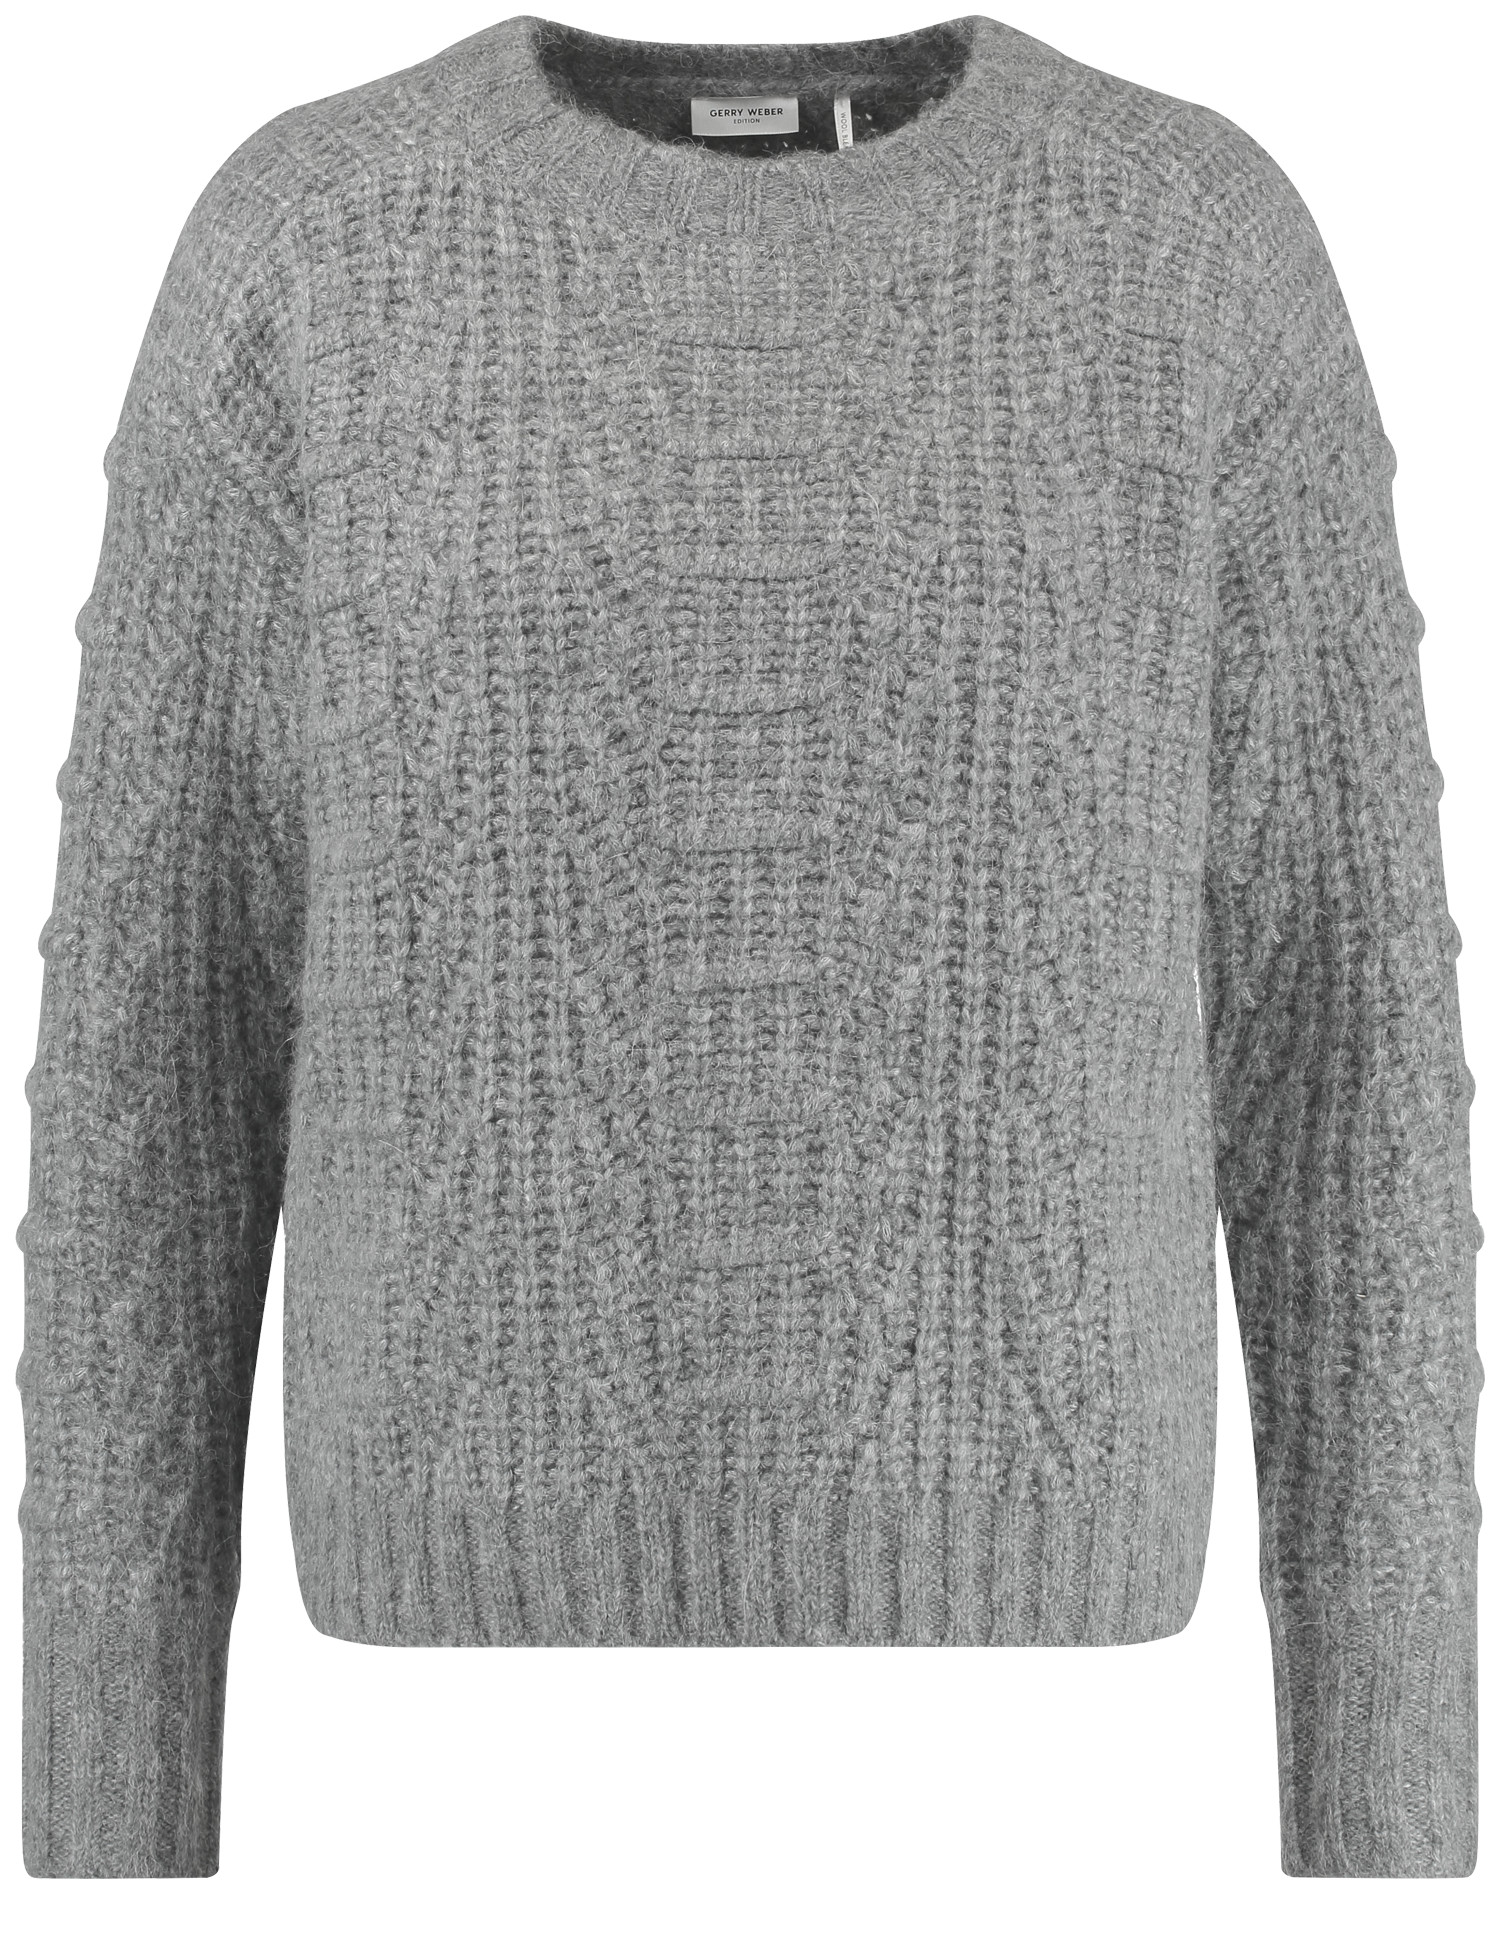 grober Strick-Pullover aus Wolle mit Alpaka